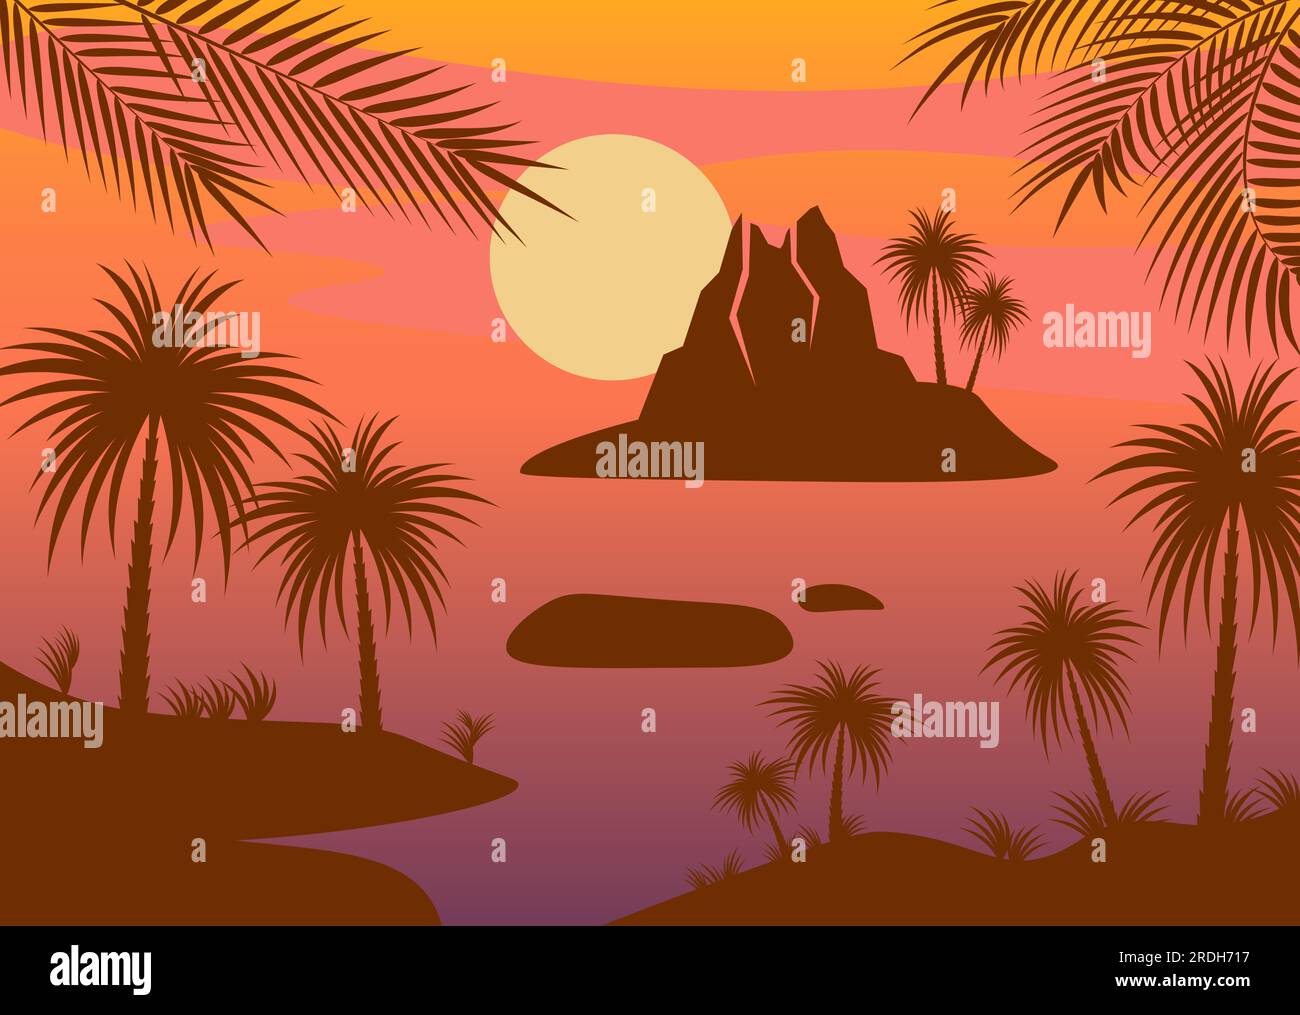 Paesaggio in stile silhouette con palme da spiaggia tropicali e isola vulcanica Illustrazione Vettoriale